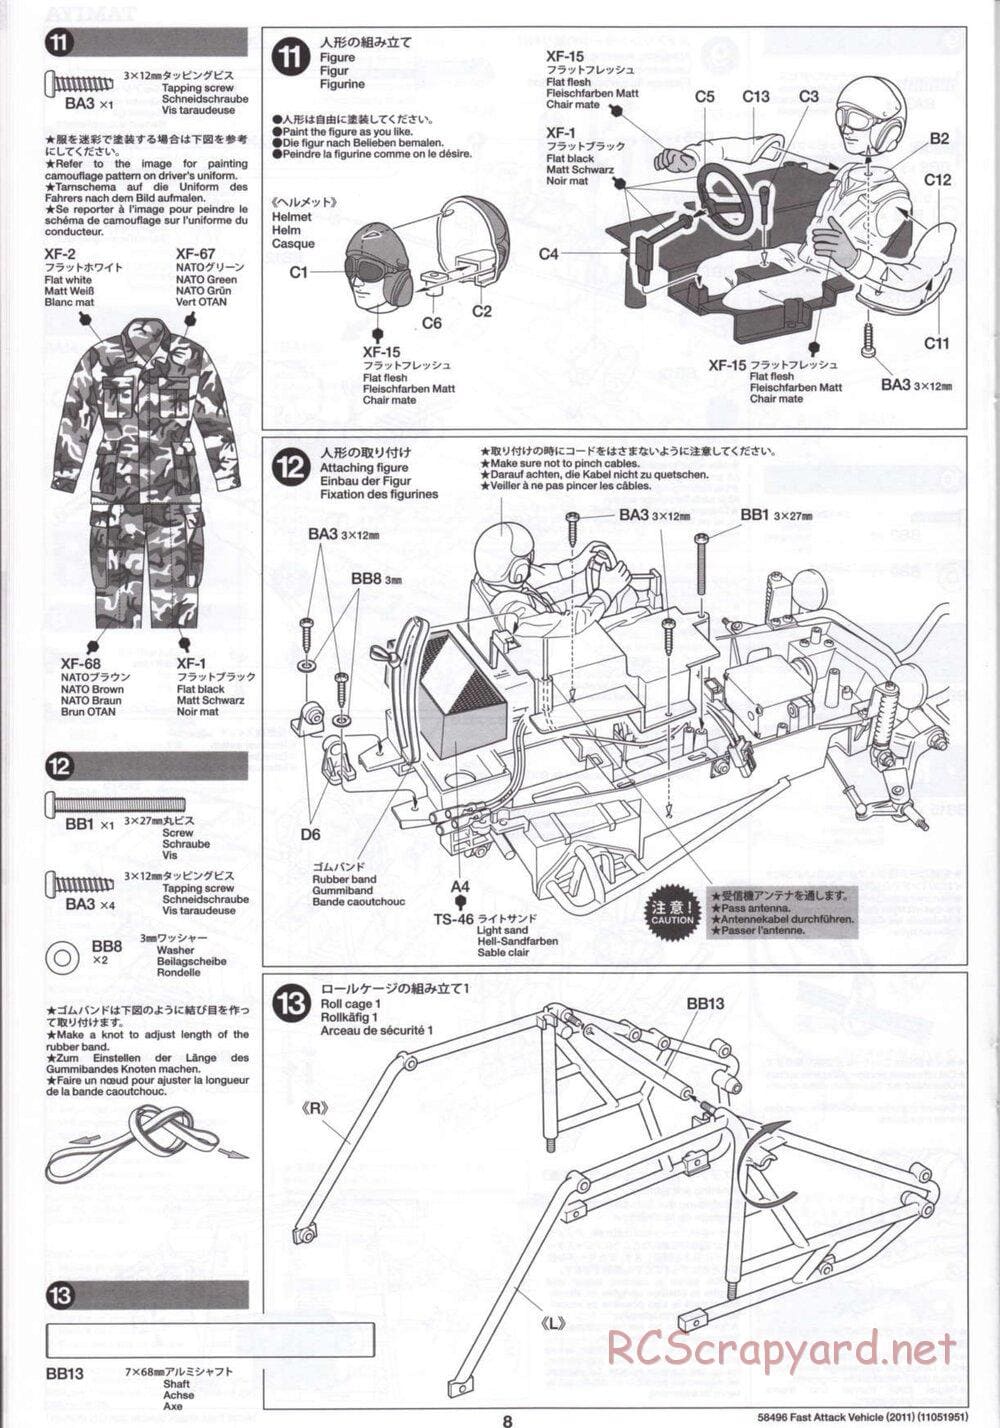 Tamiya - Fast Attack Vehicle 2011 - FAV Chassis - Manual - Page 8